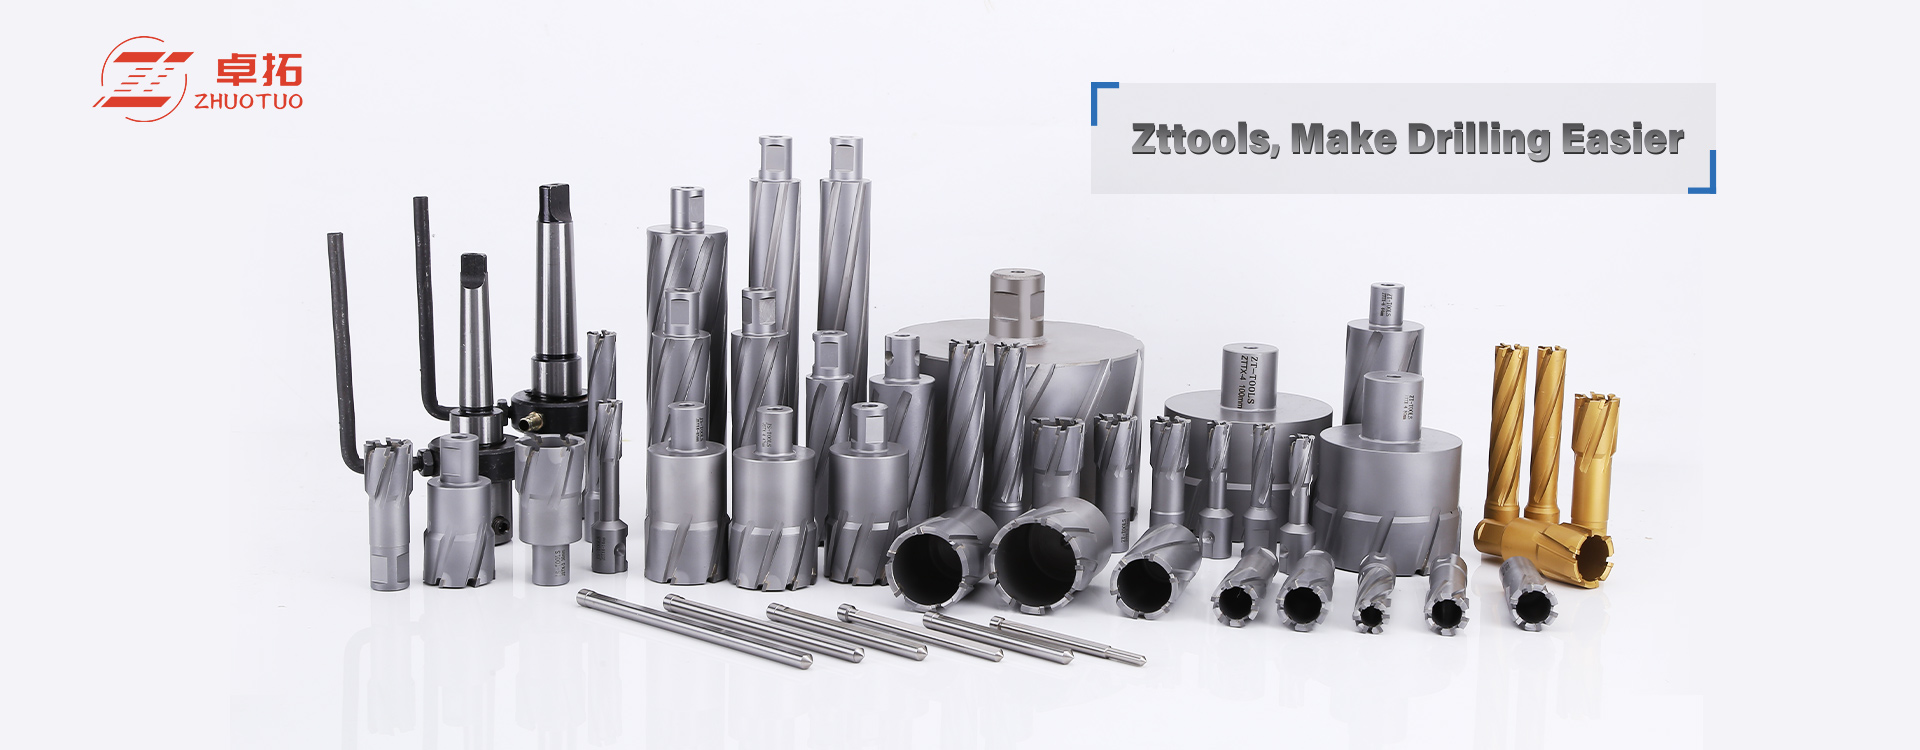 Zhuotuo Precision Tools (Suzhou) Co., Ltd.